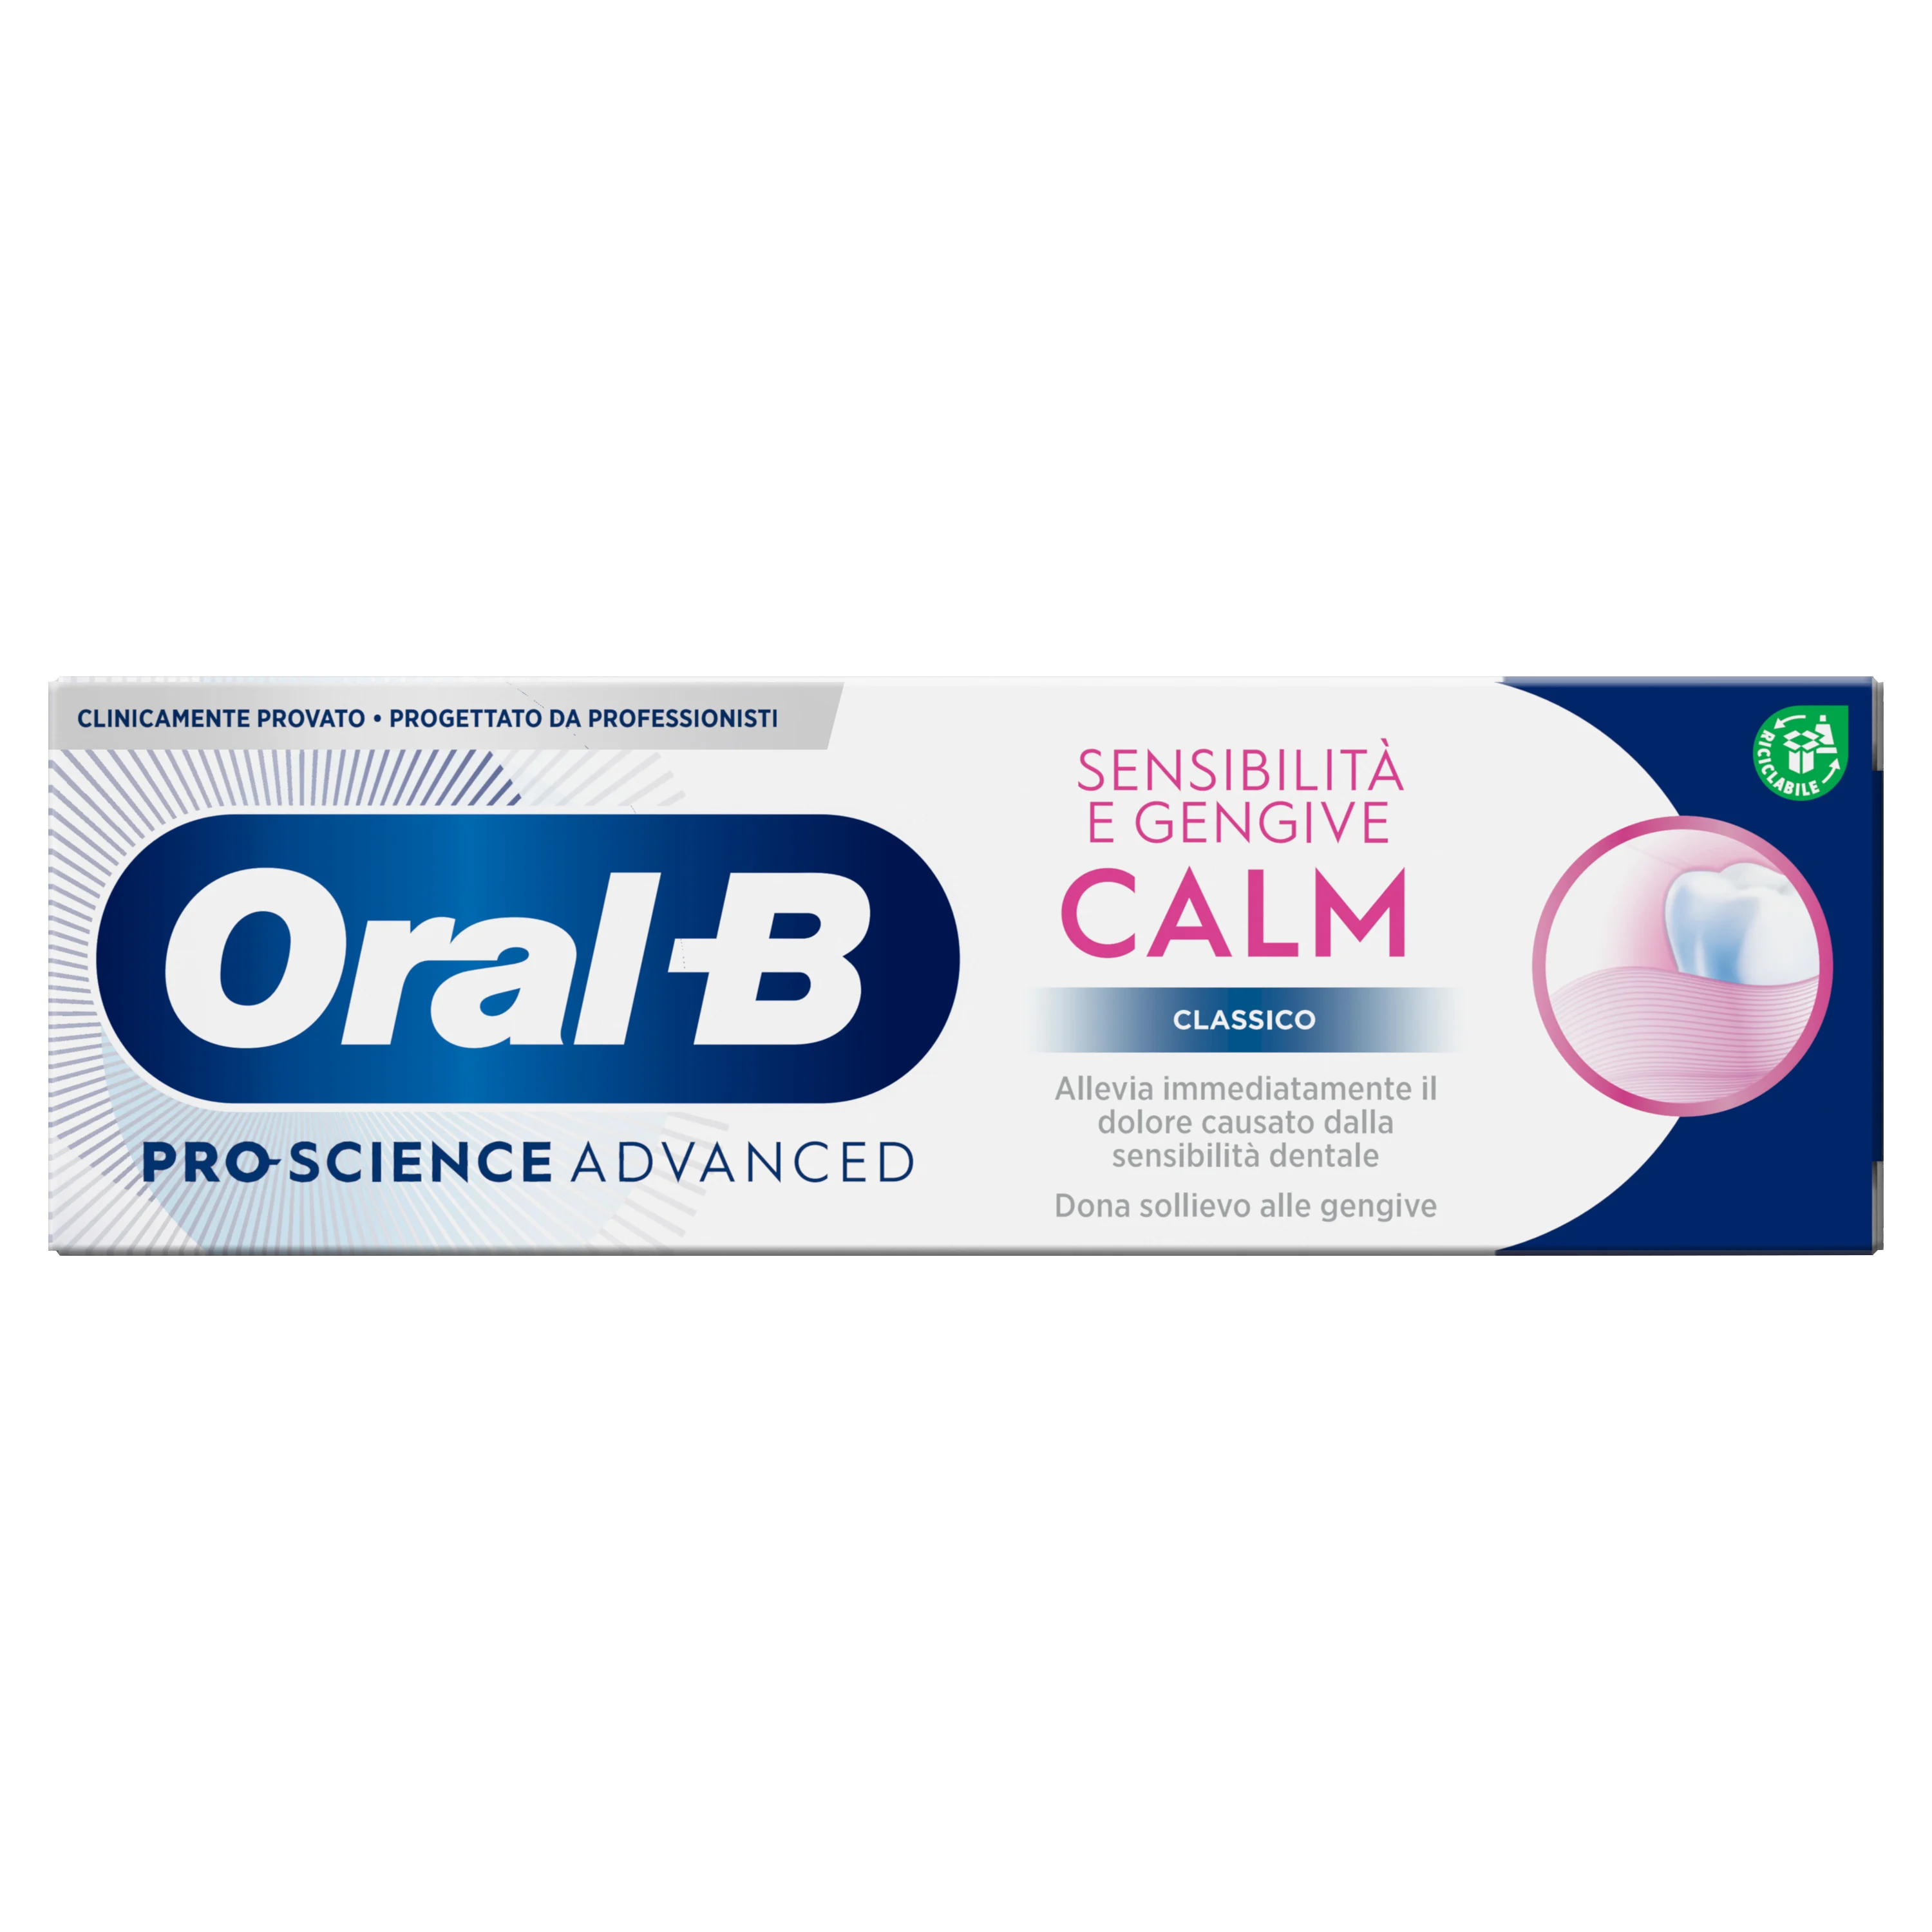 Oral-B Dentifricio Pro-Science Advanced Sensibilità e Gengive Calm 